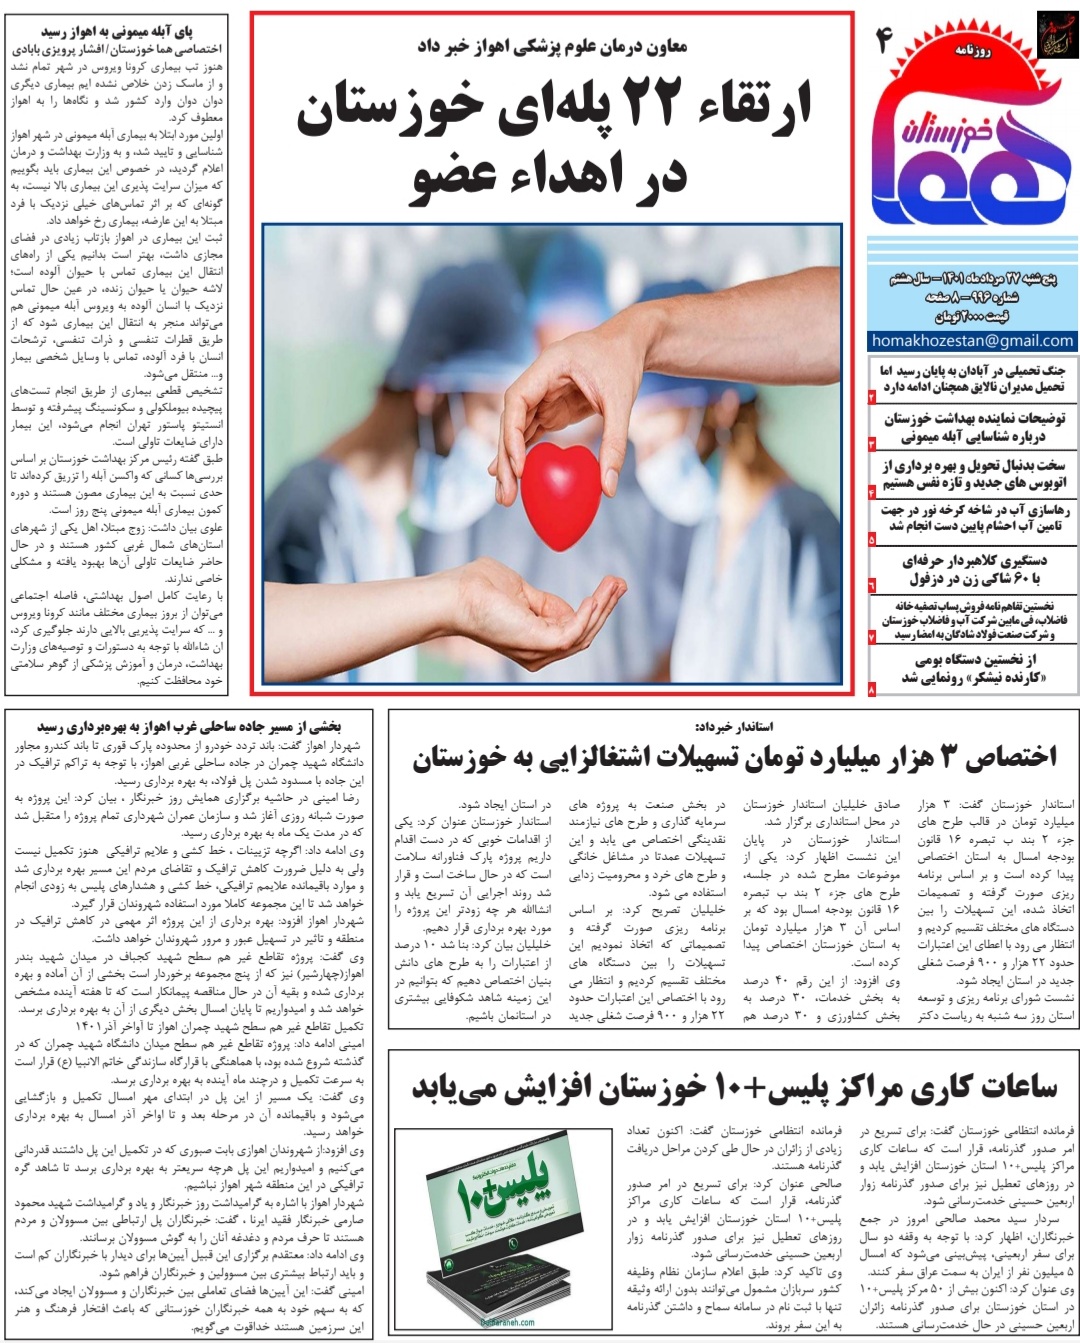 روزنامه هما خوزستان شماره ۹۹۶ به تاریخ پنج شنبه ۲۷ مرداد ماه ۱۴۰۱